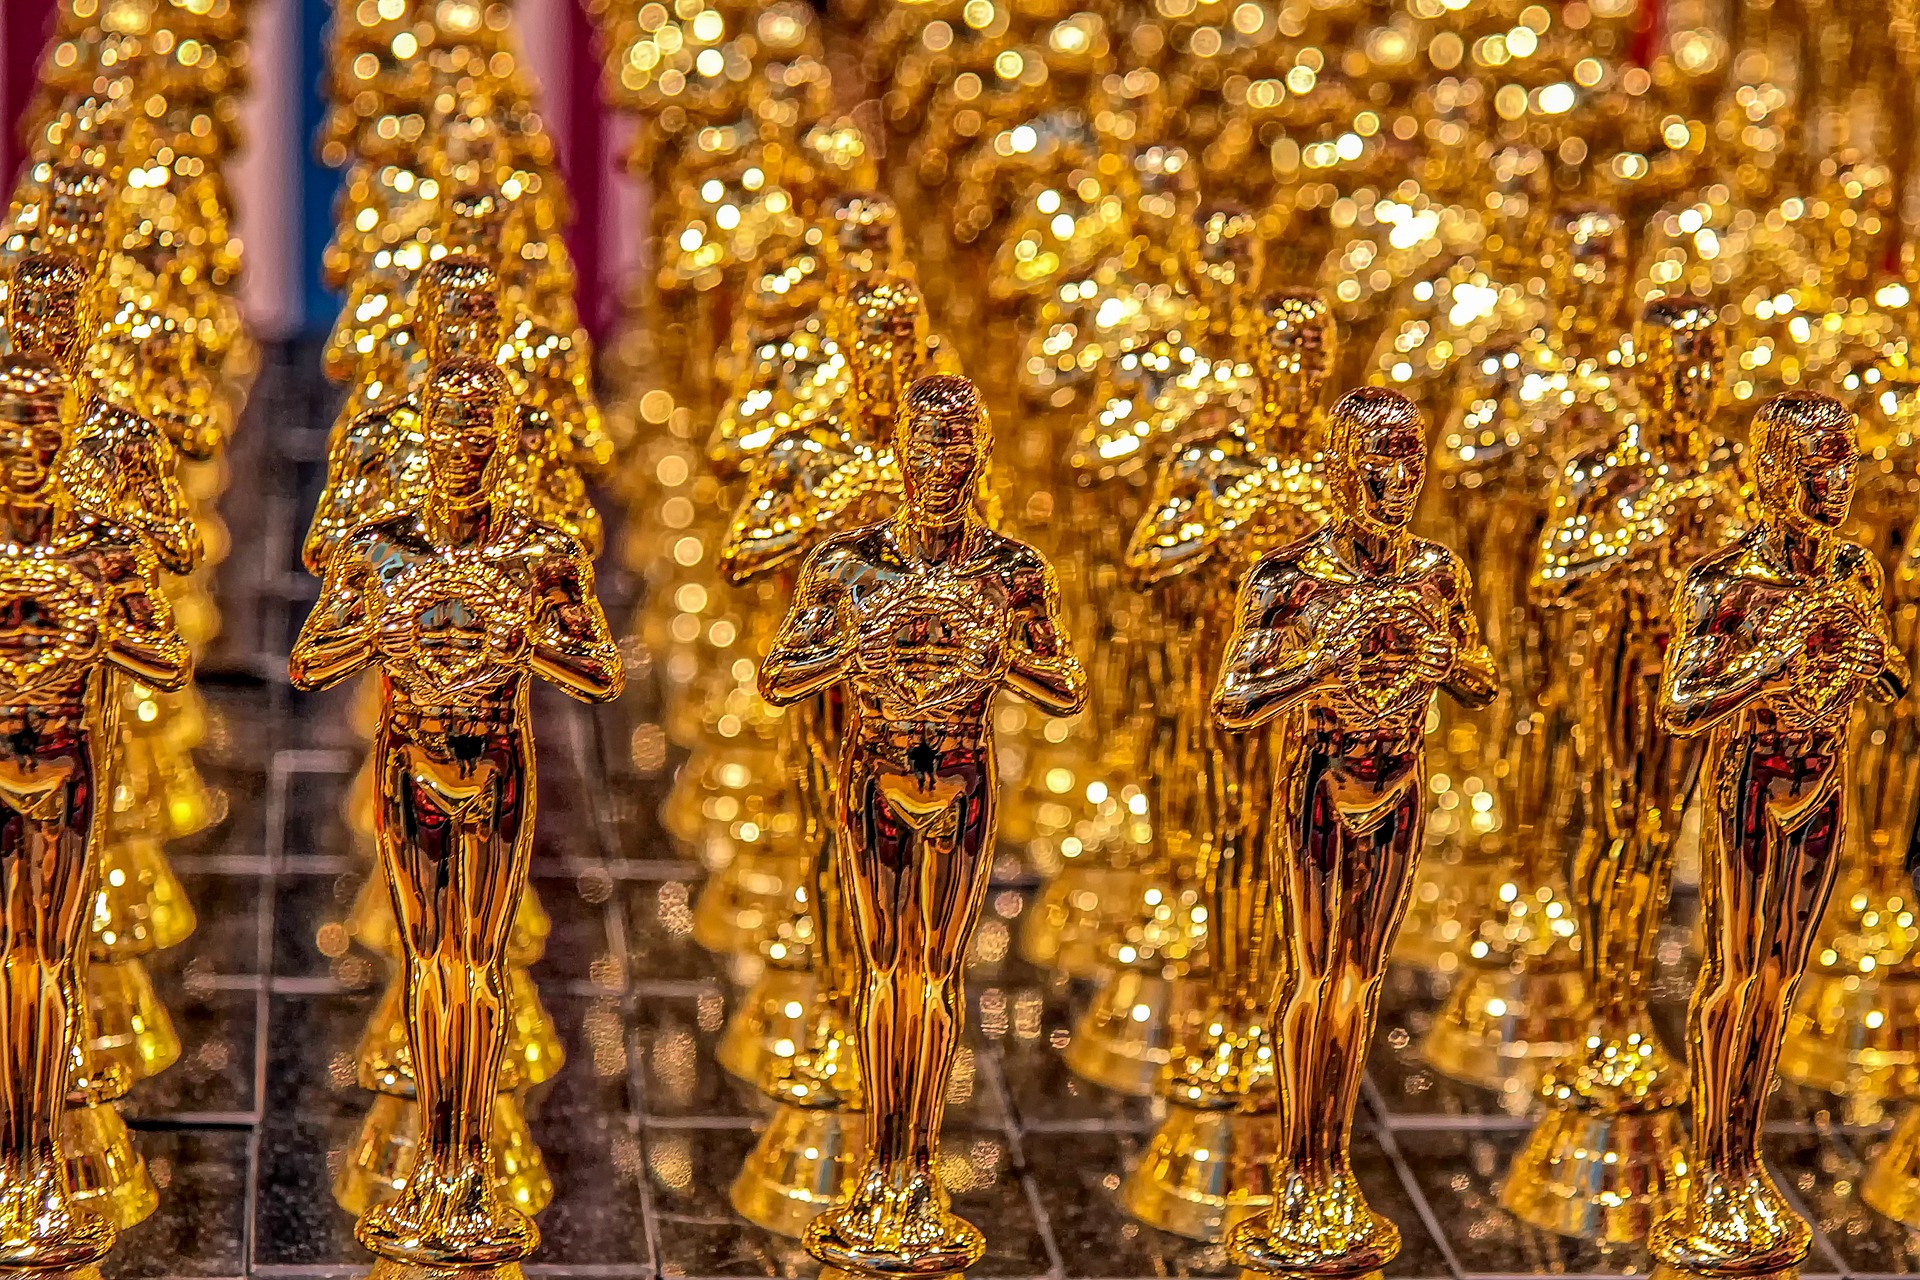 Oscar 2020: How to Watch Academy Awards på din iPhone och iPad